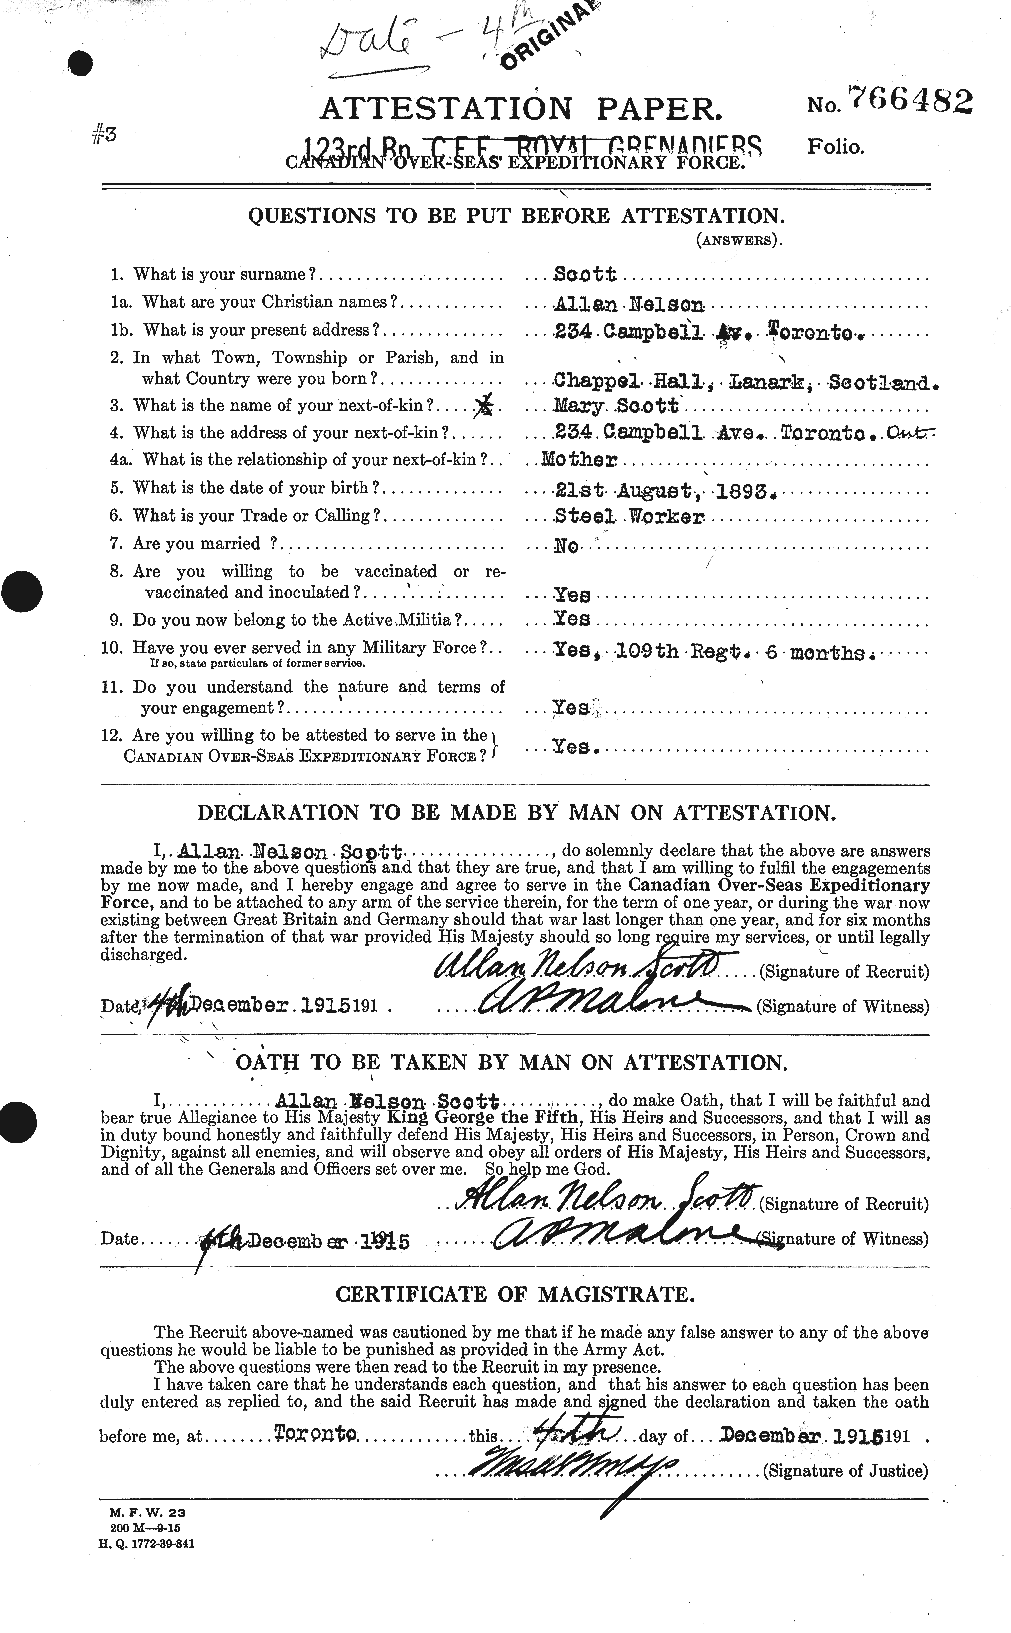 Dossiers du Personnel de la Première Guerre mondiale - CEC 086574a